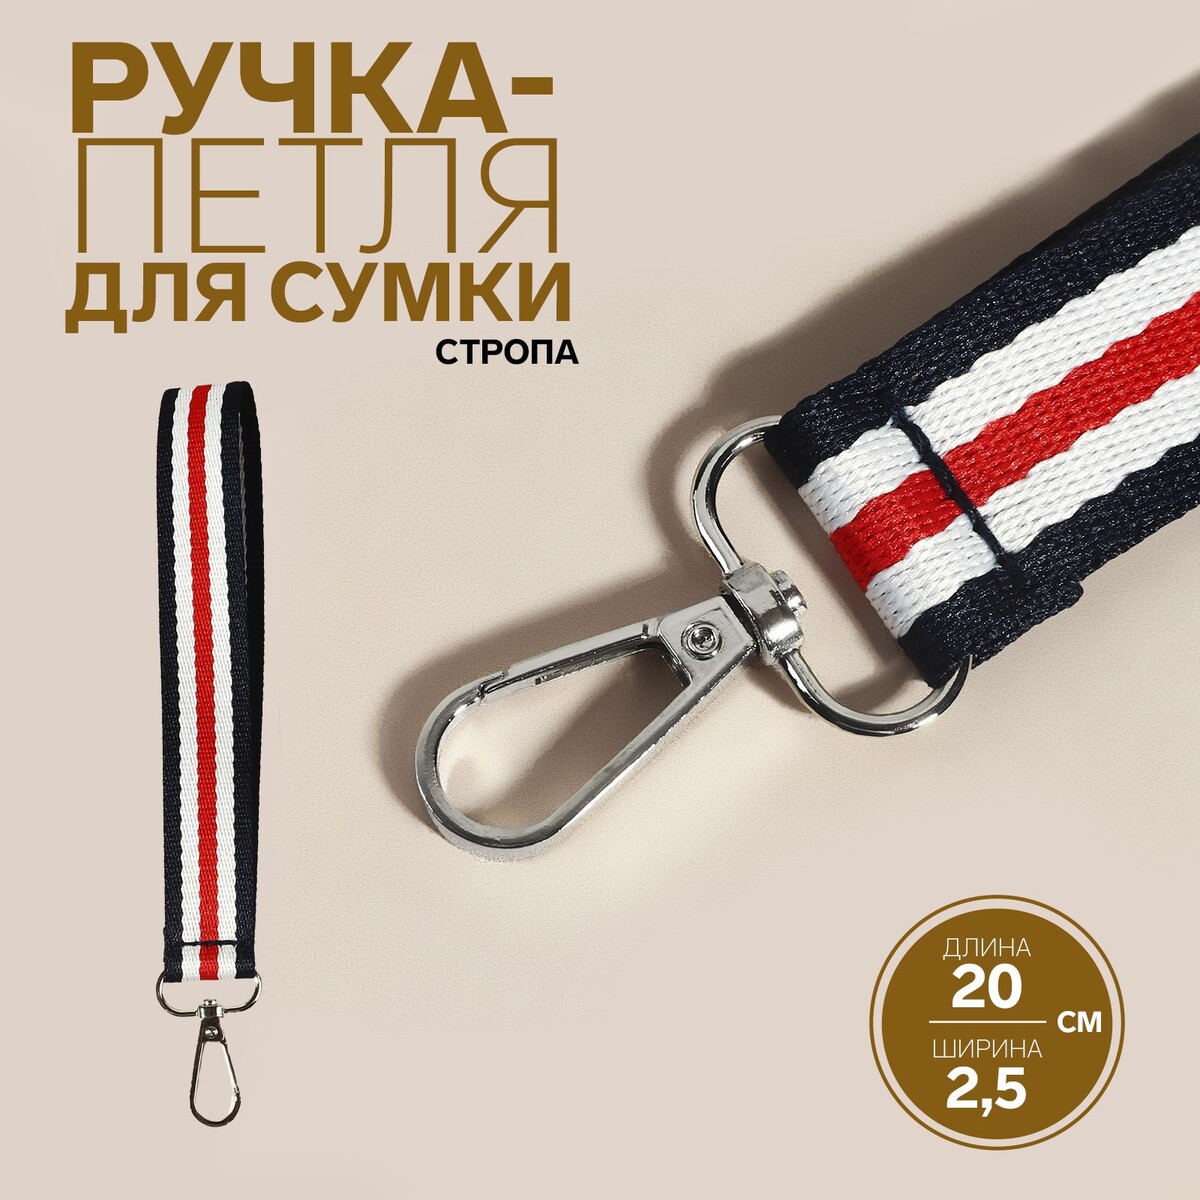 Ручка-петля для сумки, стропа, 20 × 2,5 см, цвет синий/белый/красный ручка панорама грозный красный